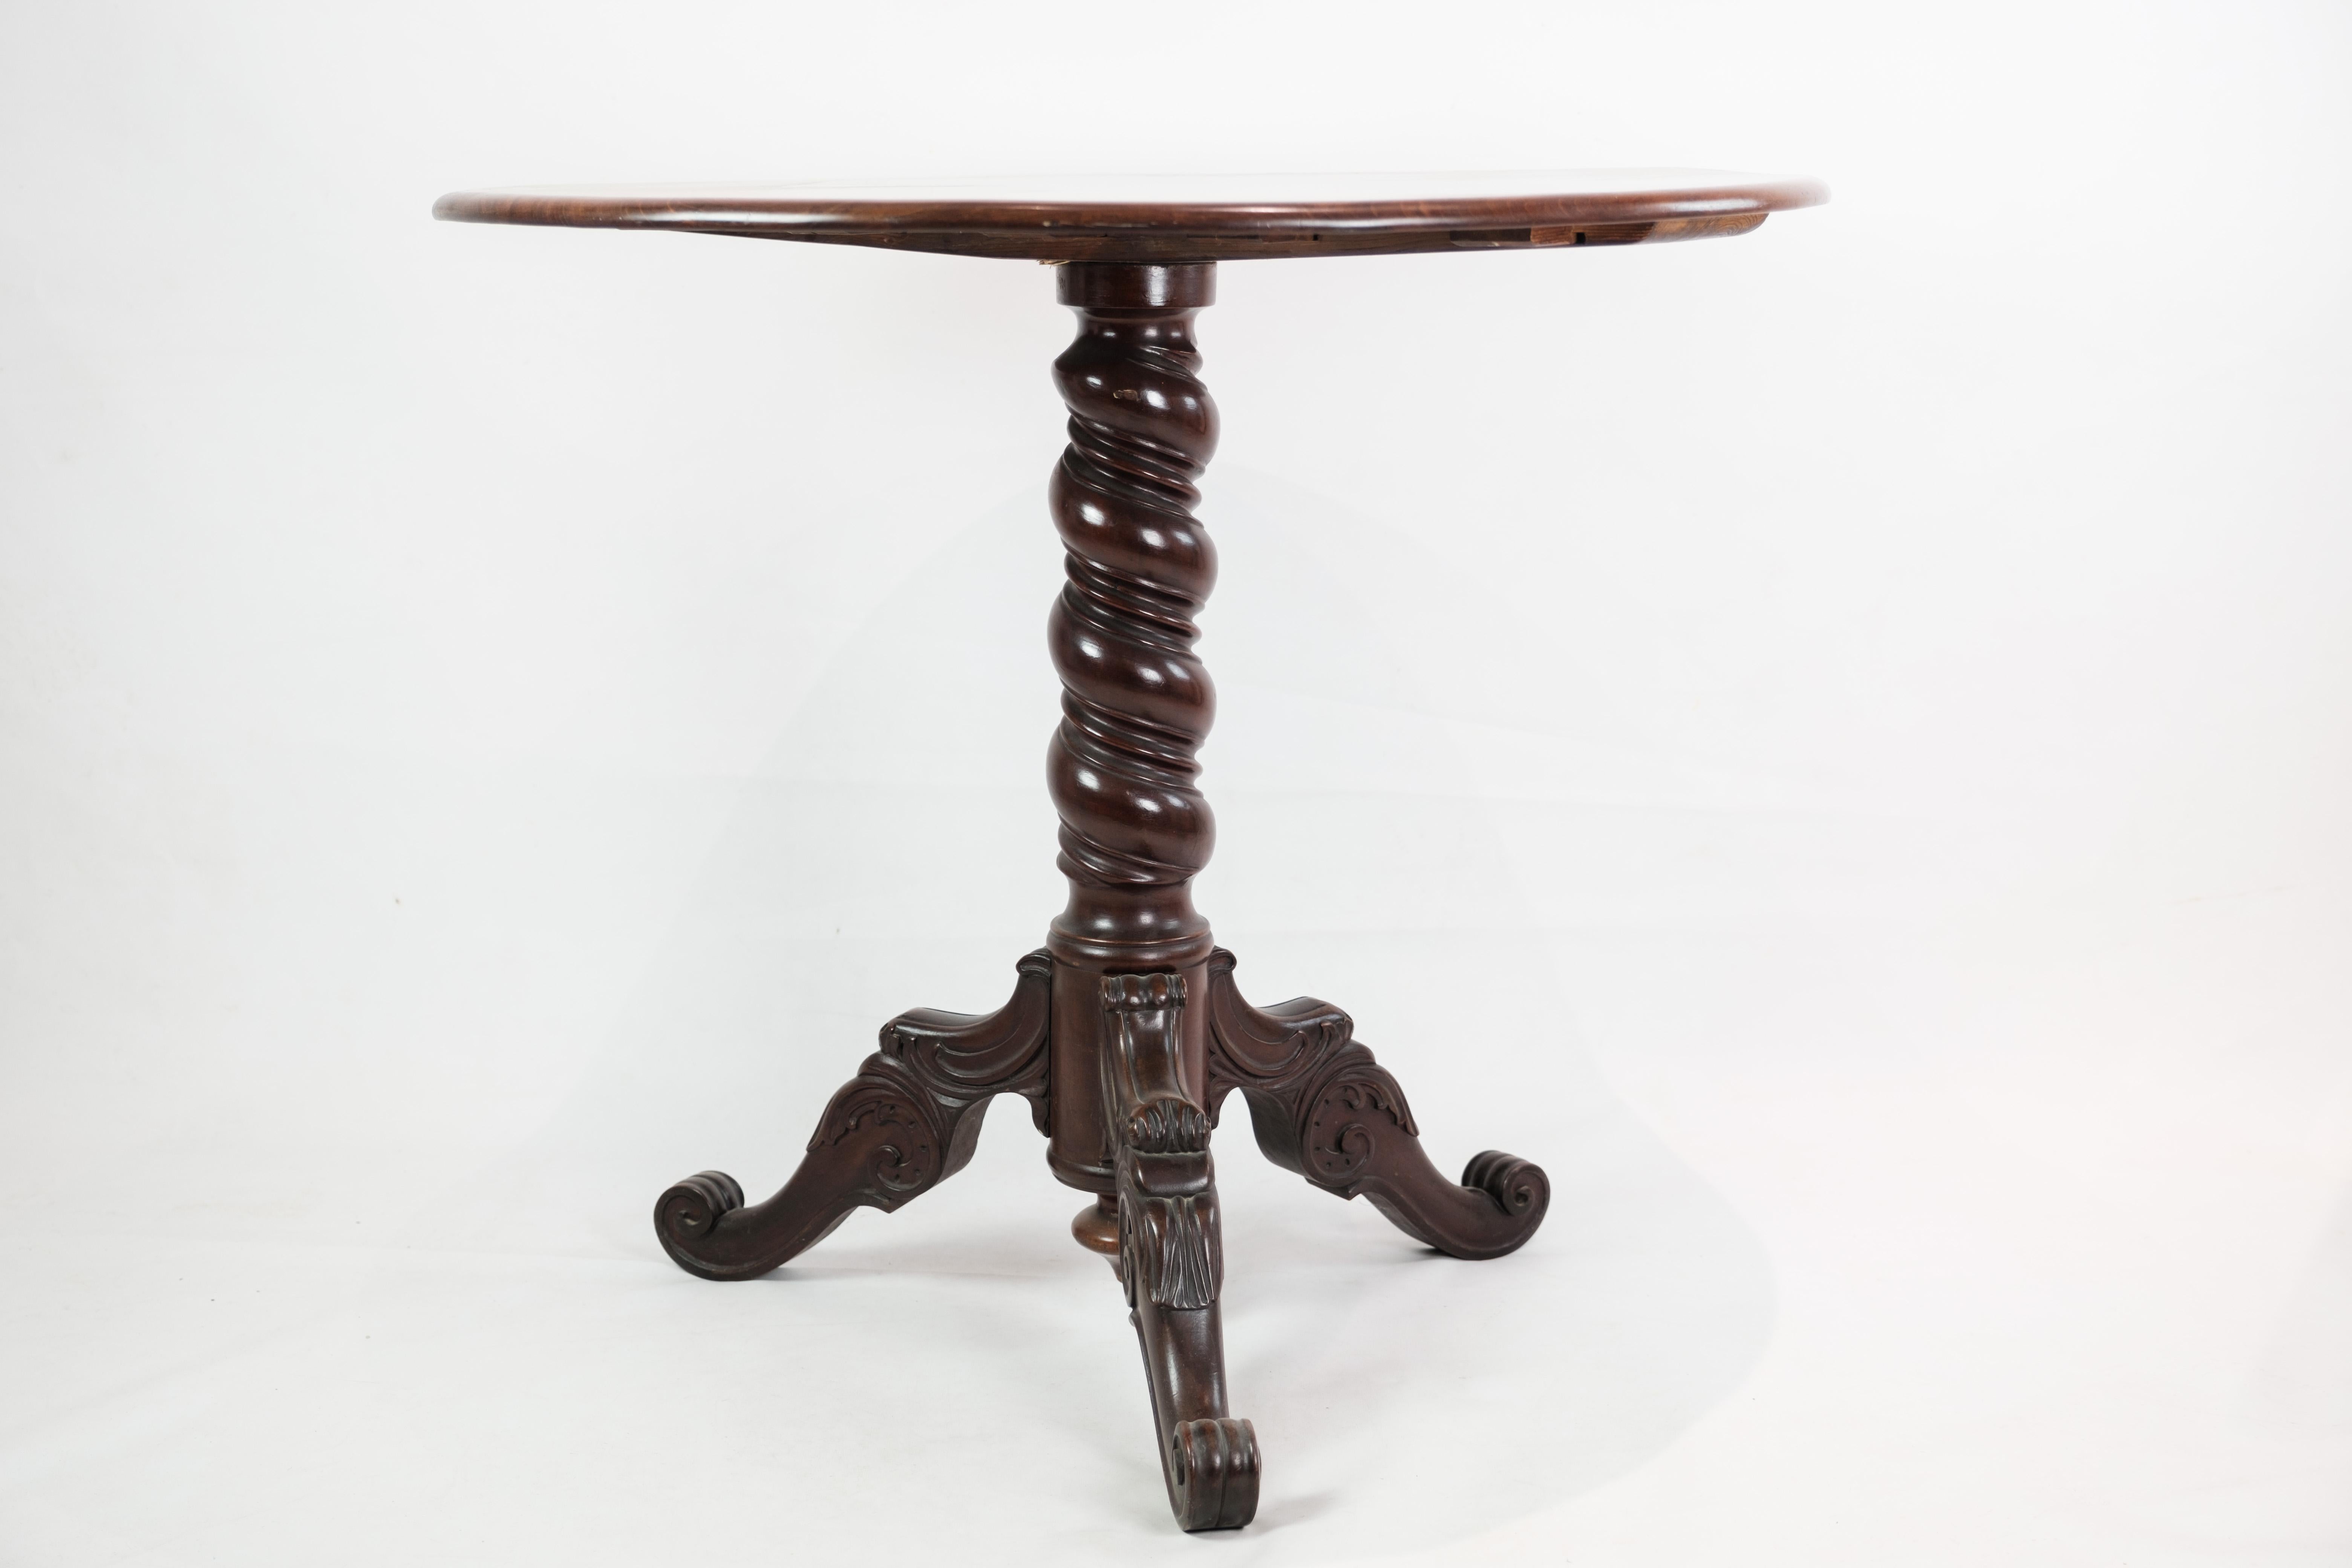 Le guéridon ou table d'appoint originaire du Danemark et fabriqué en acajou vers les années 1860 témoigne de la beauté durable de l'artisanat danois.

Cette pièce exquise présente les tons riches et chauds caractéristiques du bois d'acajou, ajoutant